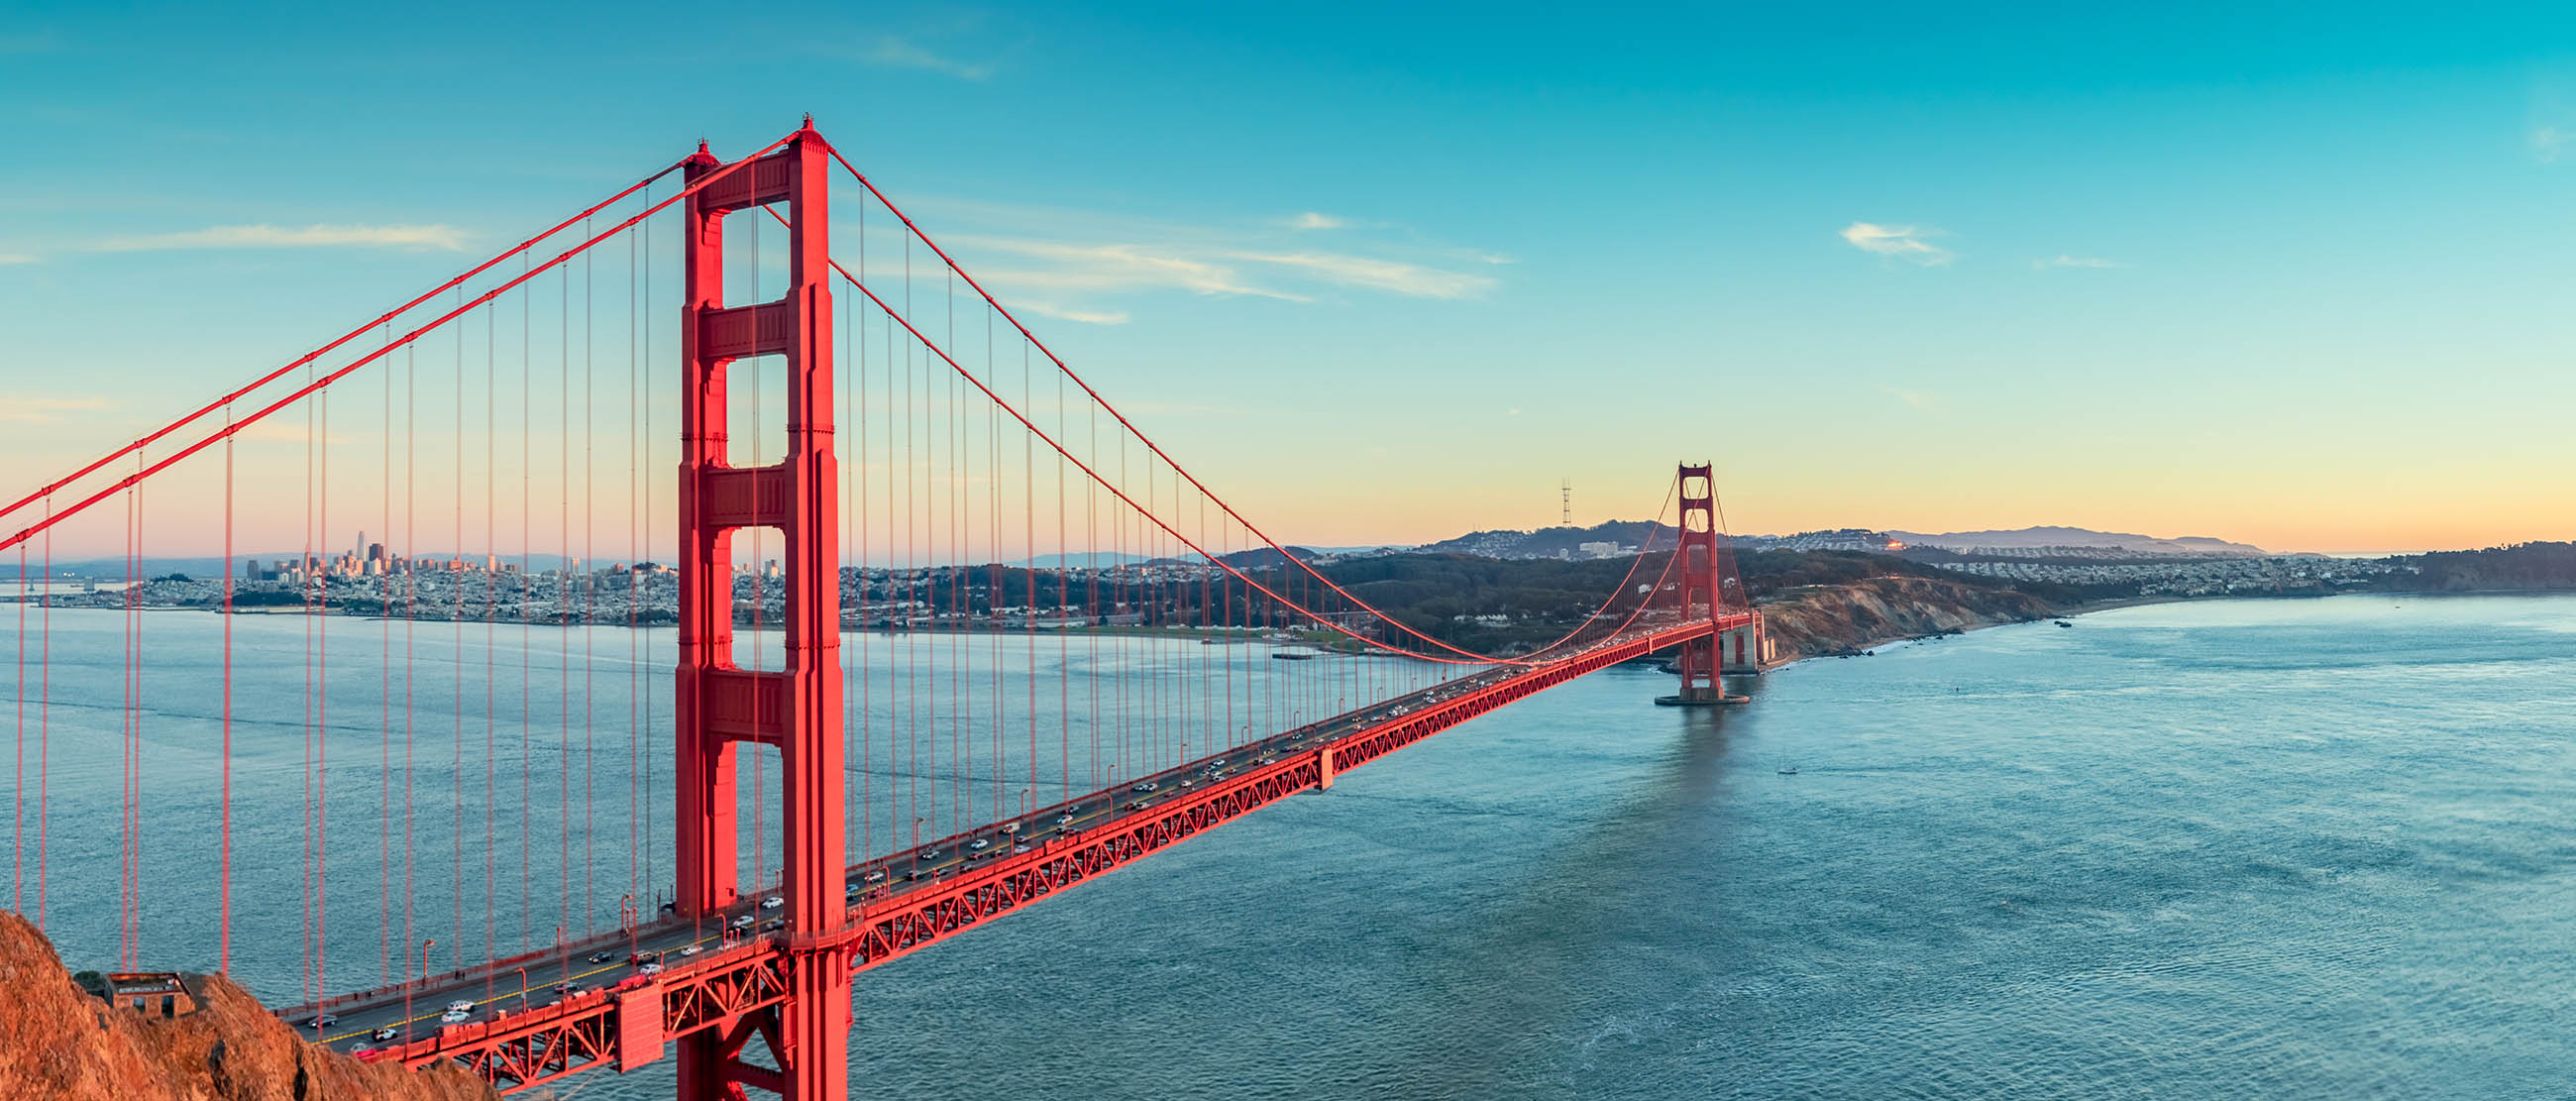 Cầu cổng vàng - biểu tượng đặc trưng và nổi tiếng của thành phố San Francisco